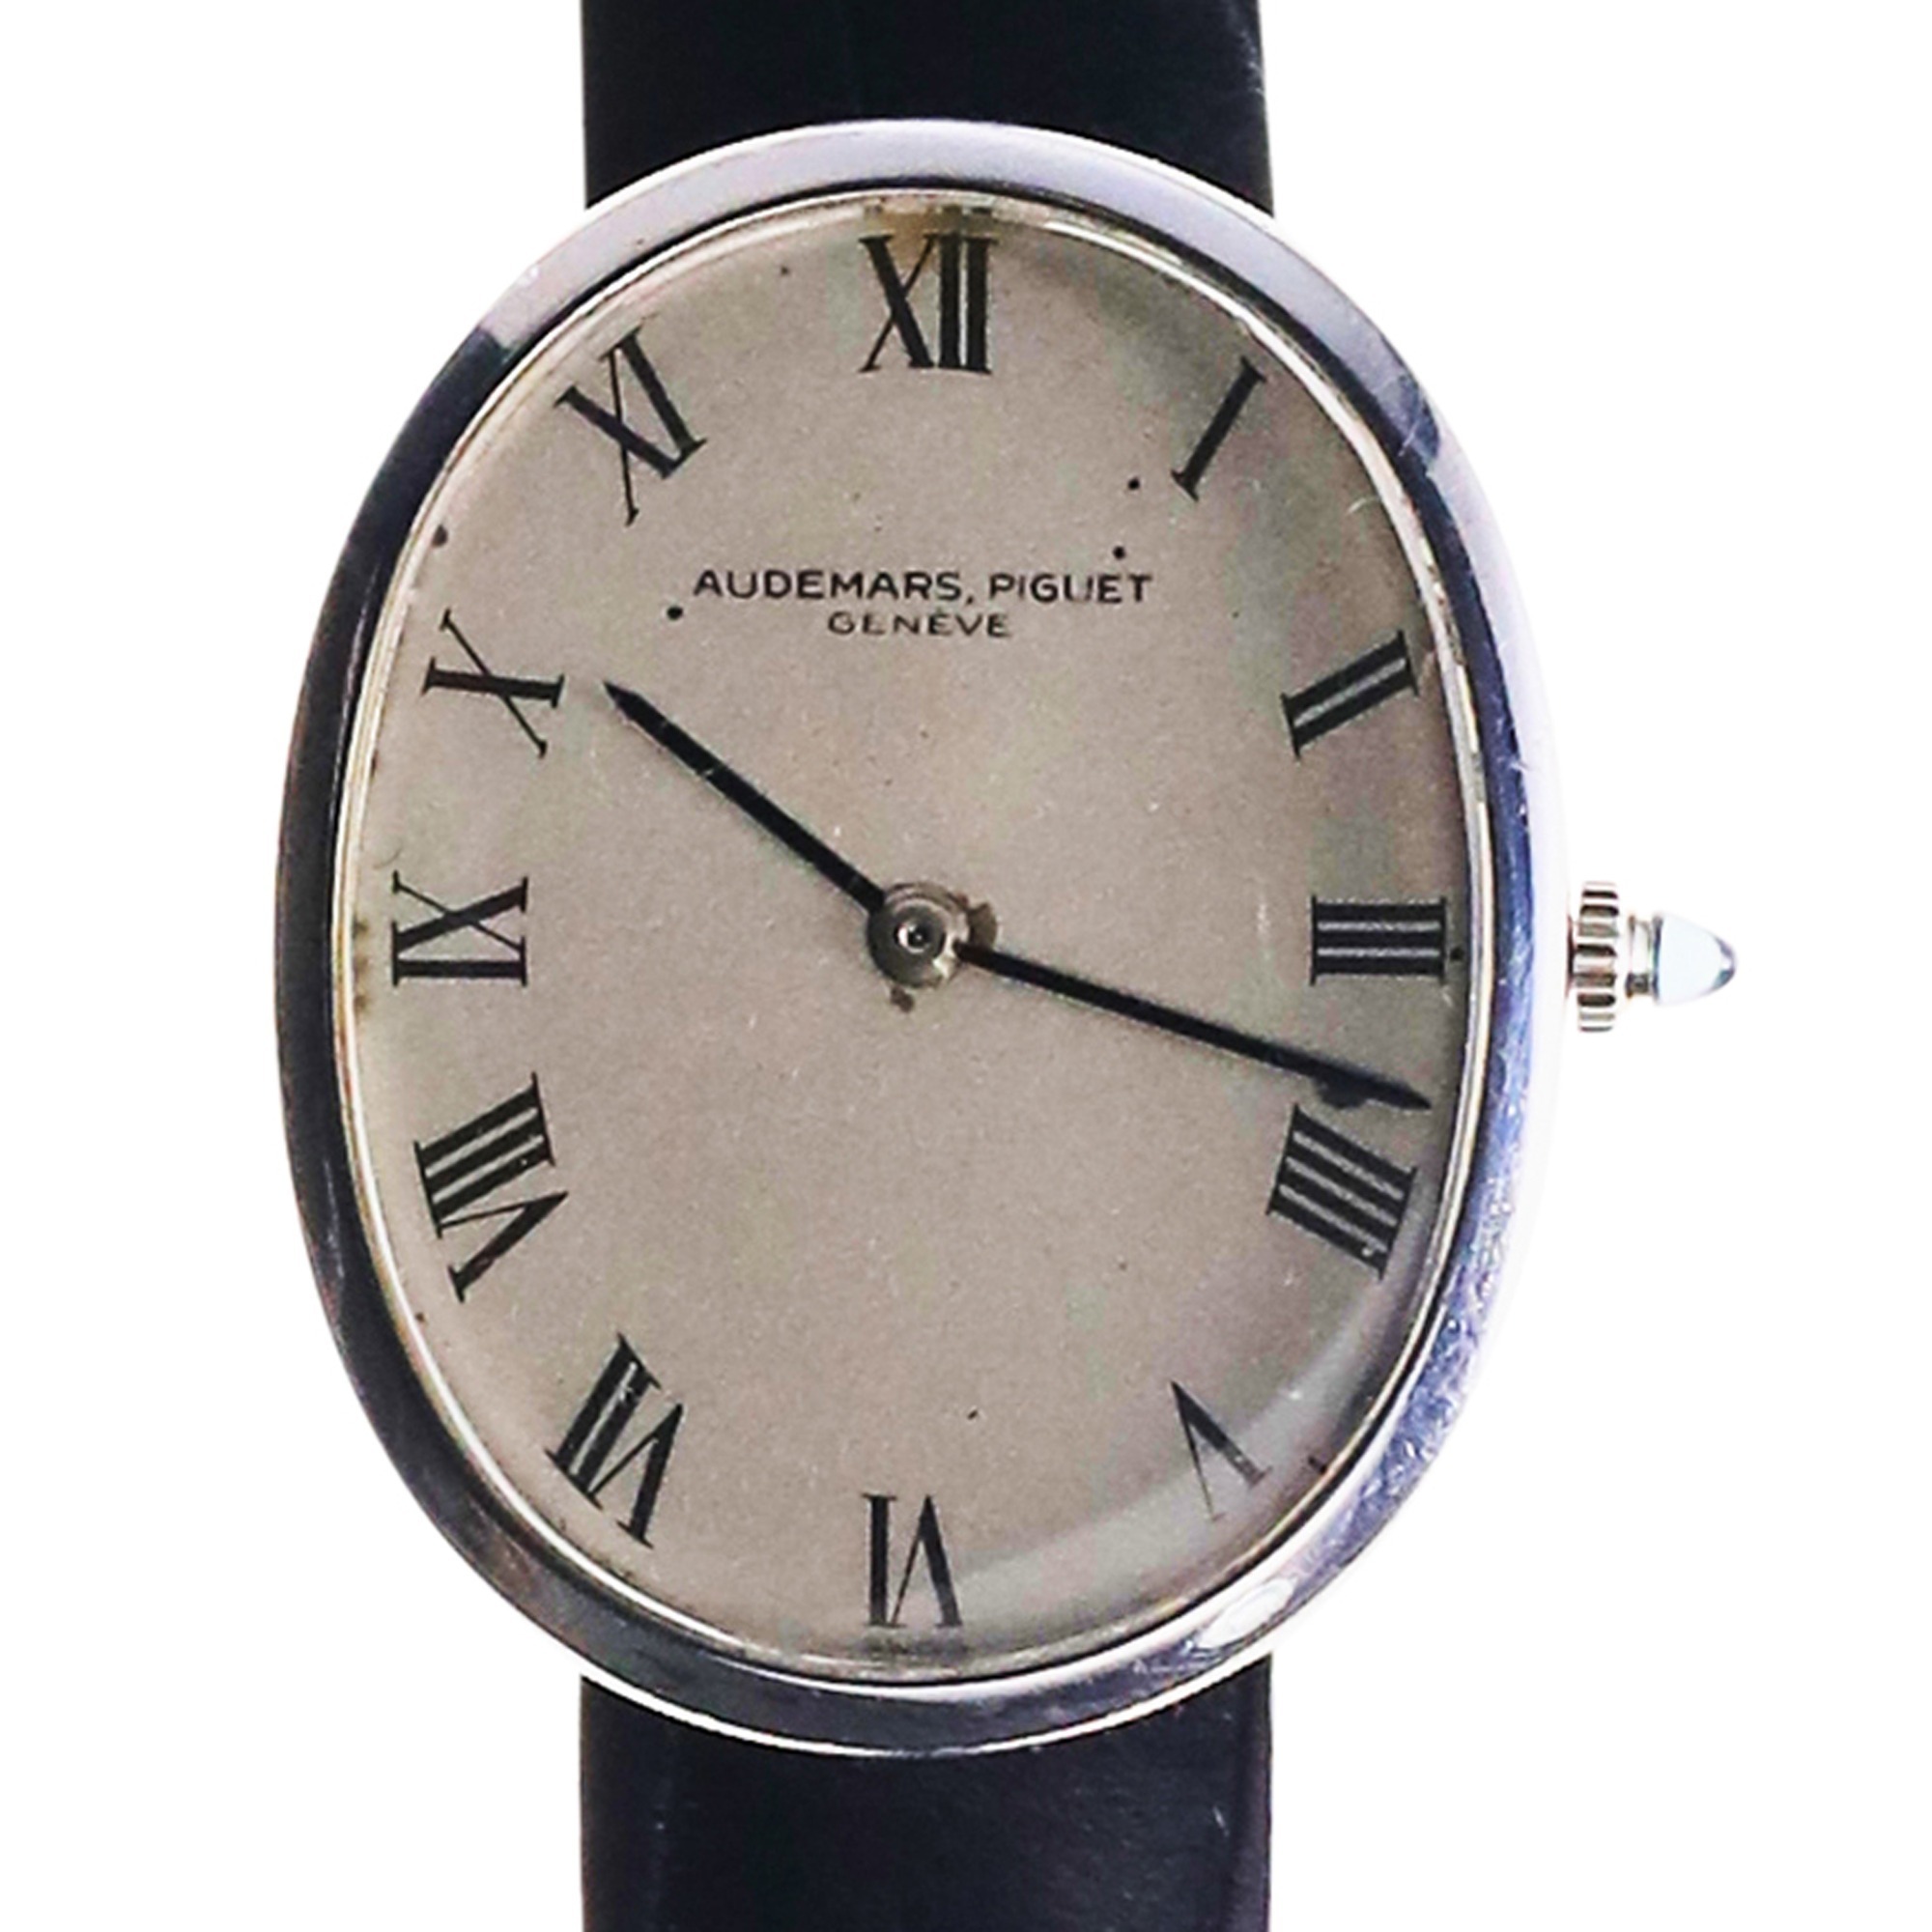 Audemars Piguet 18K White Gold Oval Case Men's Dress Wristwatch with hidden lugs